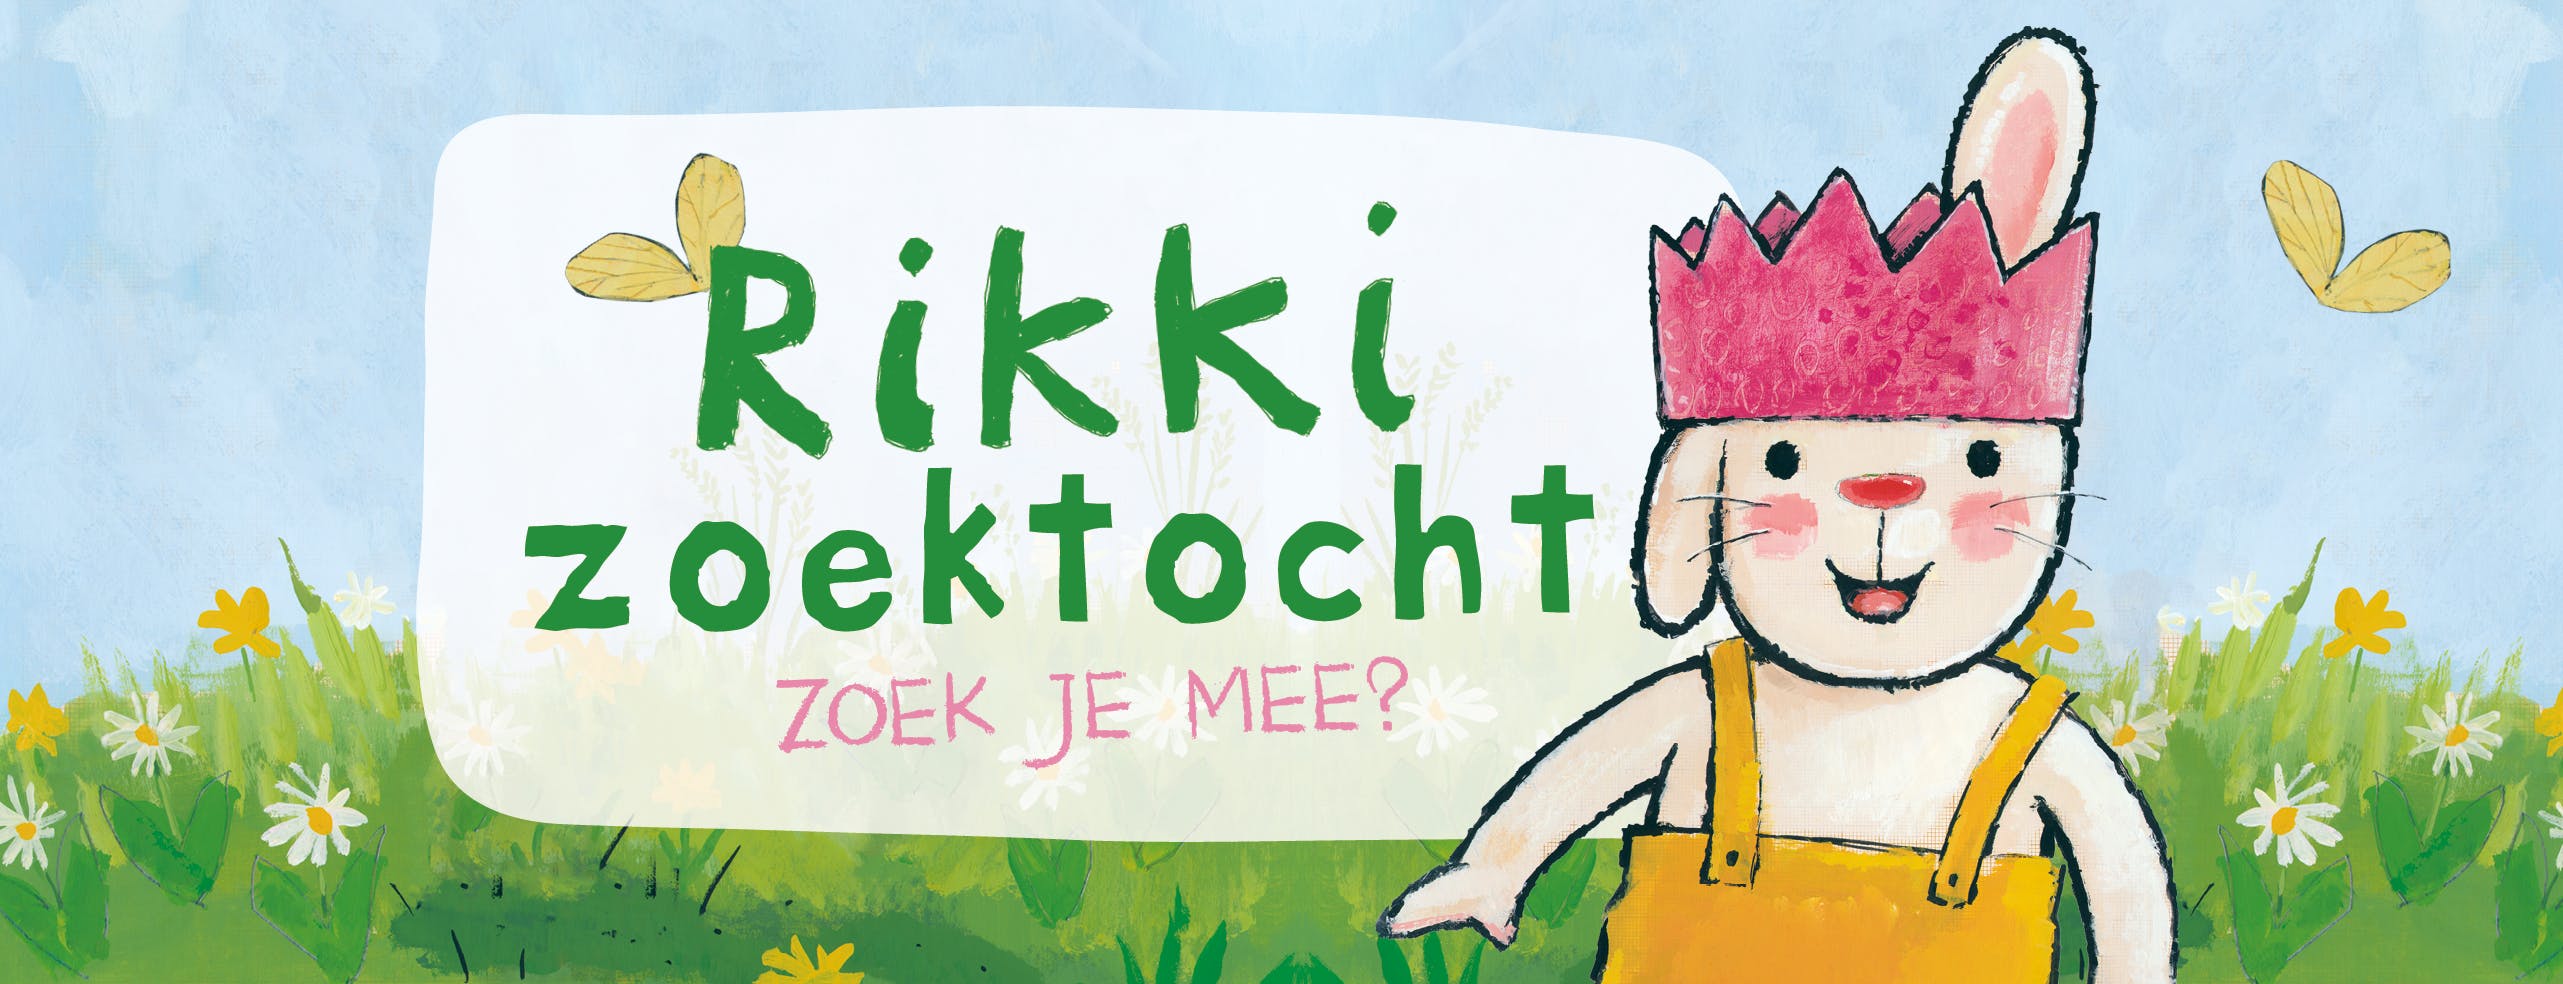 Een banner met tekst: Rikki zoektocht. Zoek je mee? 
Een vrolijk lentebeeld met bloemetjes, vlinders en Rikki met een roze verjaardagskroon. 